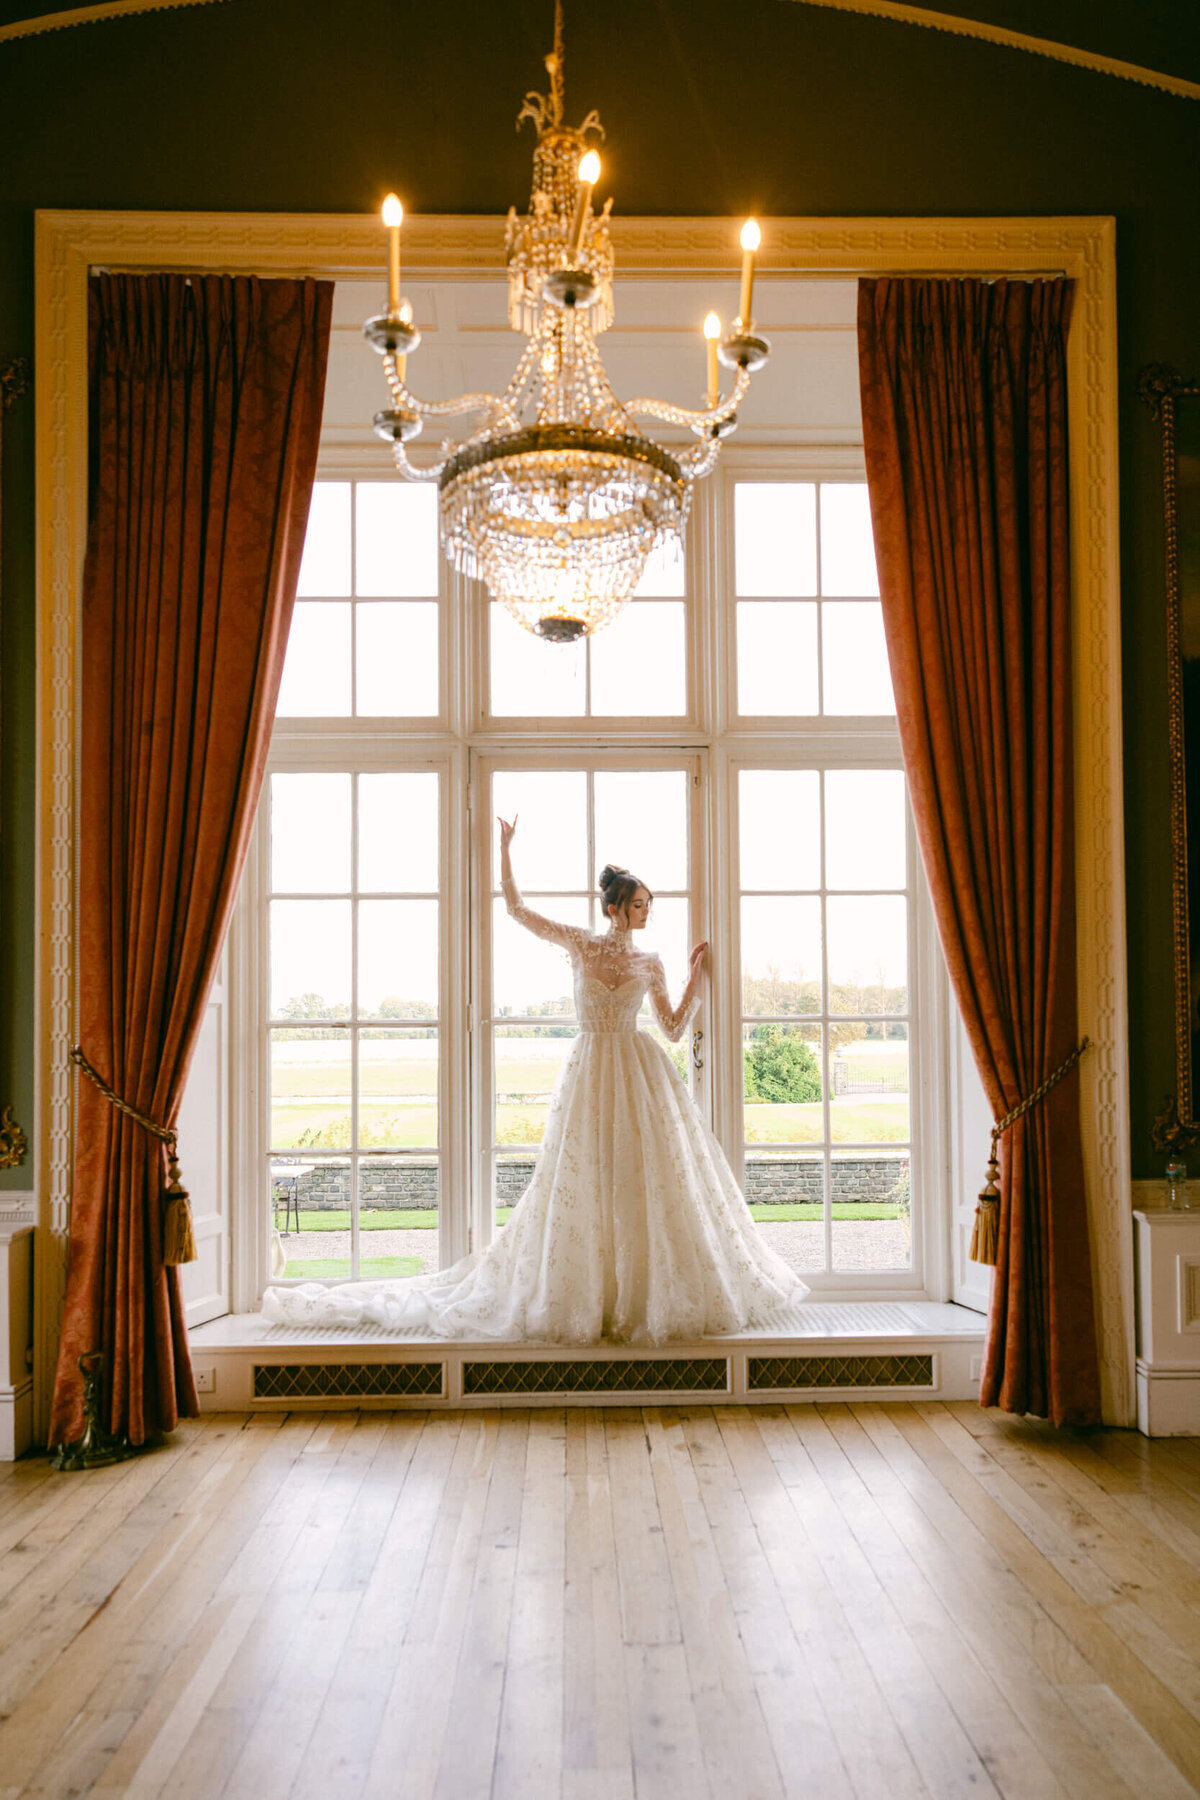 luttrellstown-castle-wedding-ireland-by-jayce-keil-39